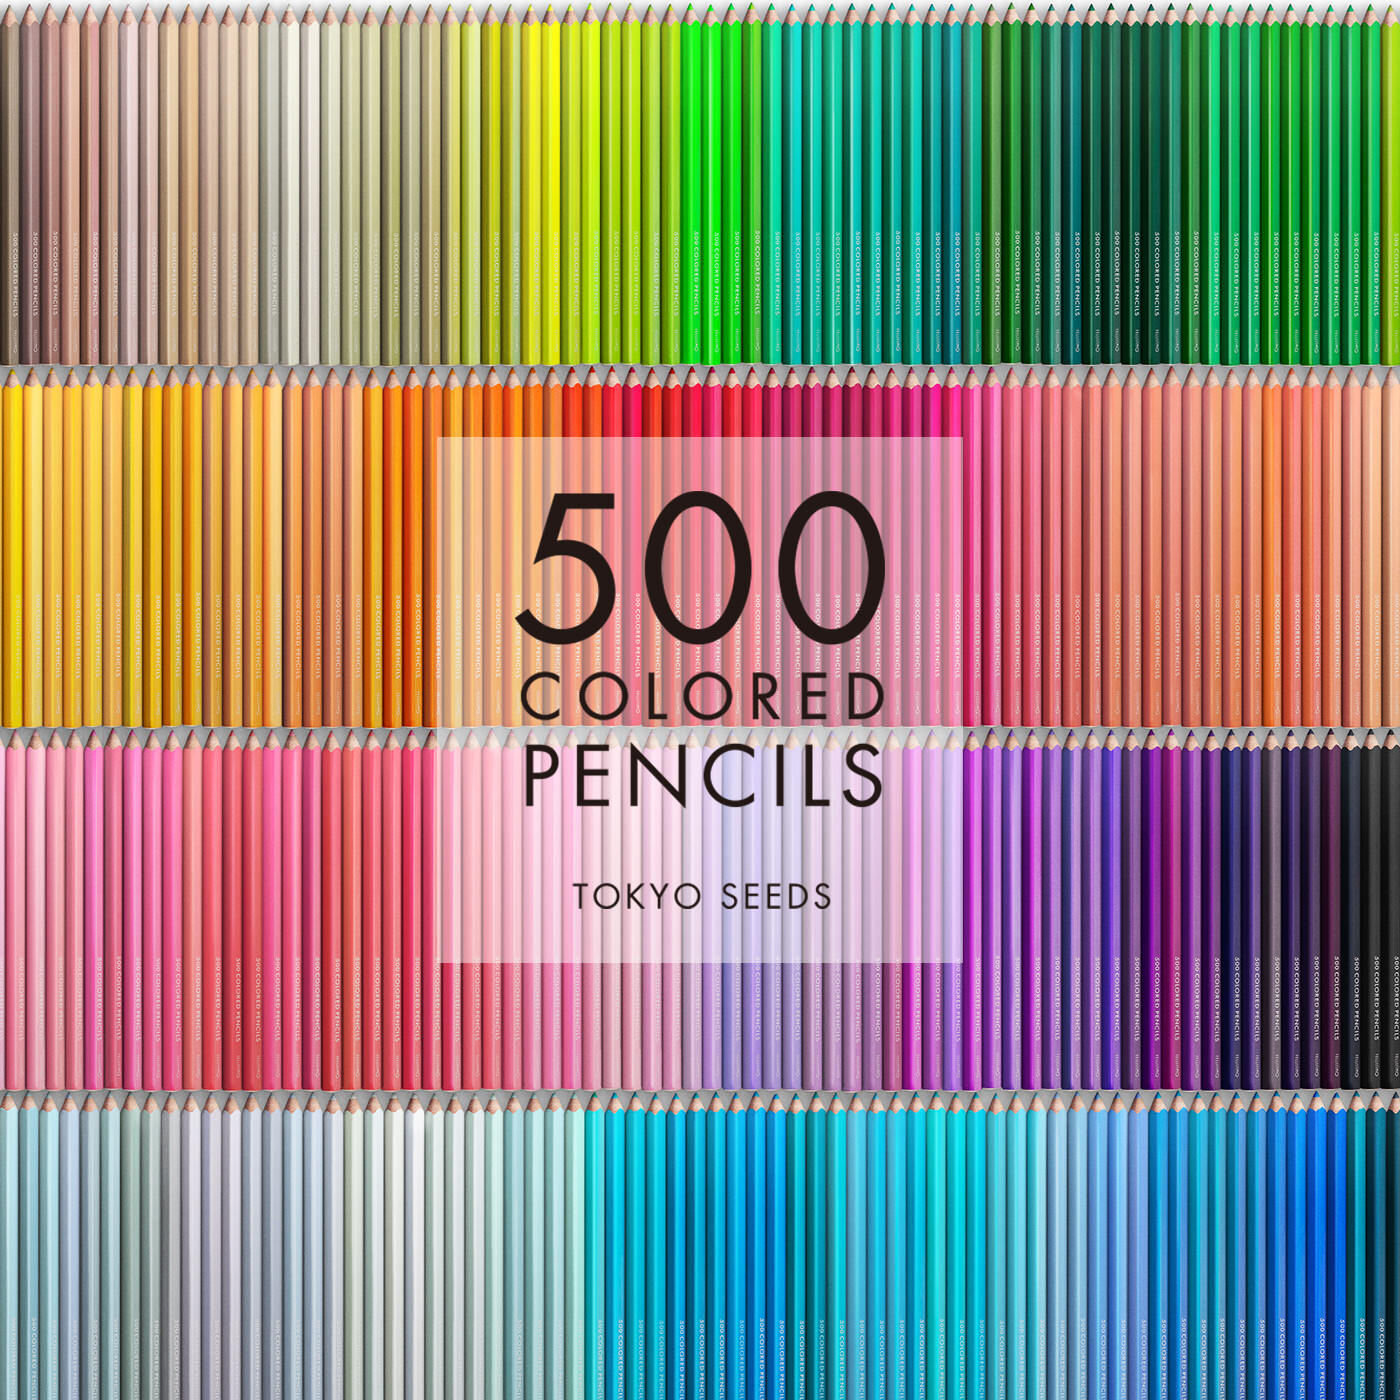 Real Stock|【167/500 TANGY CITRUS】500色の色えんぴつ TOKYO SEEDS|1992年、世界初の「500色」という膨大な色数の色えんぴつが誕生して以来、その販売数は発売当初から合わせると、世界55ヵ国10万セット以上。今回、メイド・イン・ジャパンにこだわり、すべてが新しく生まれ変わって登場しました。